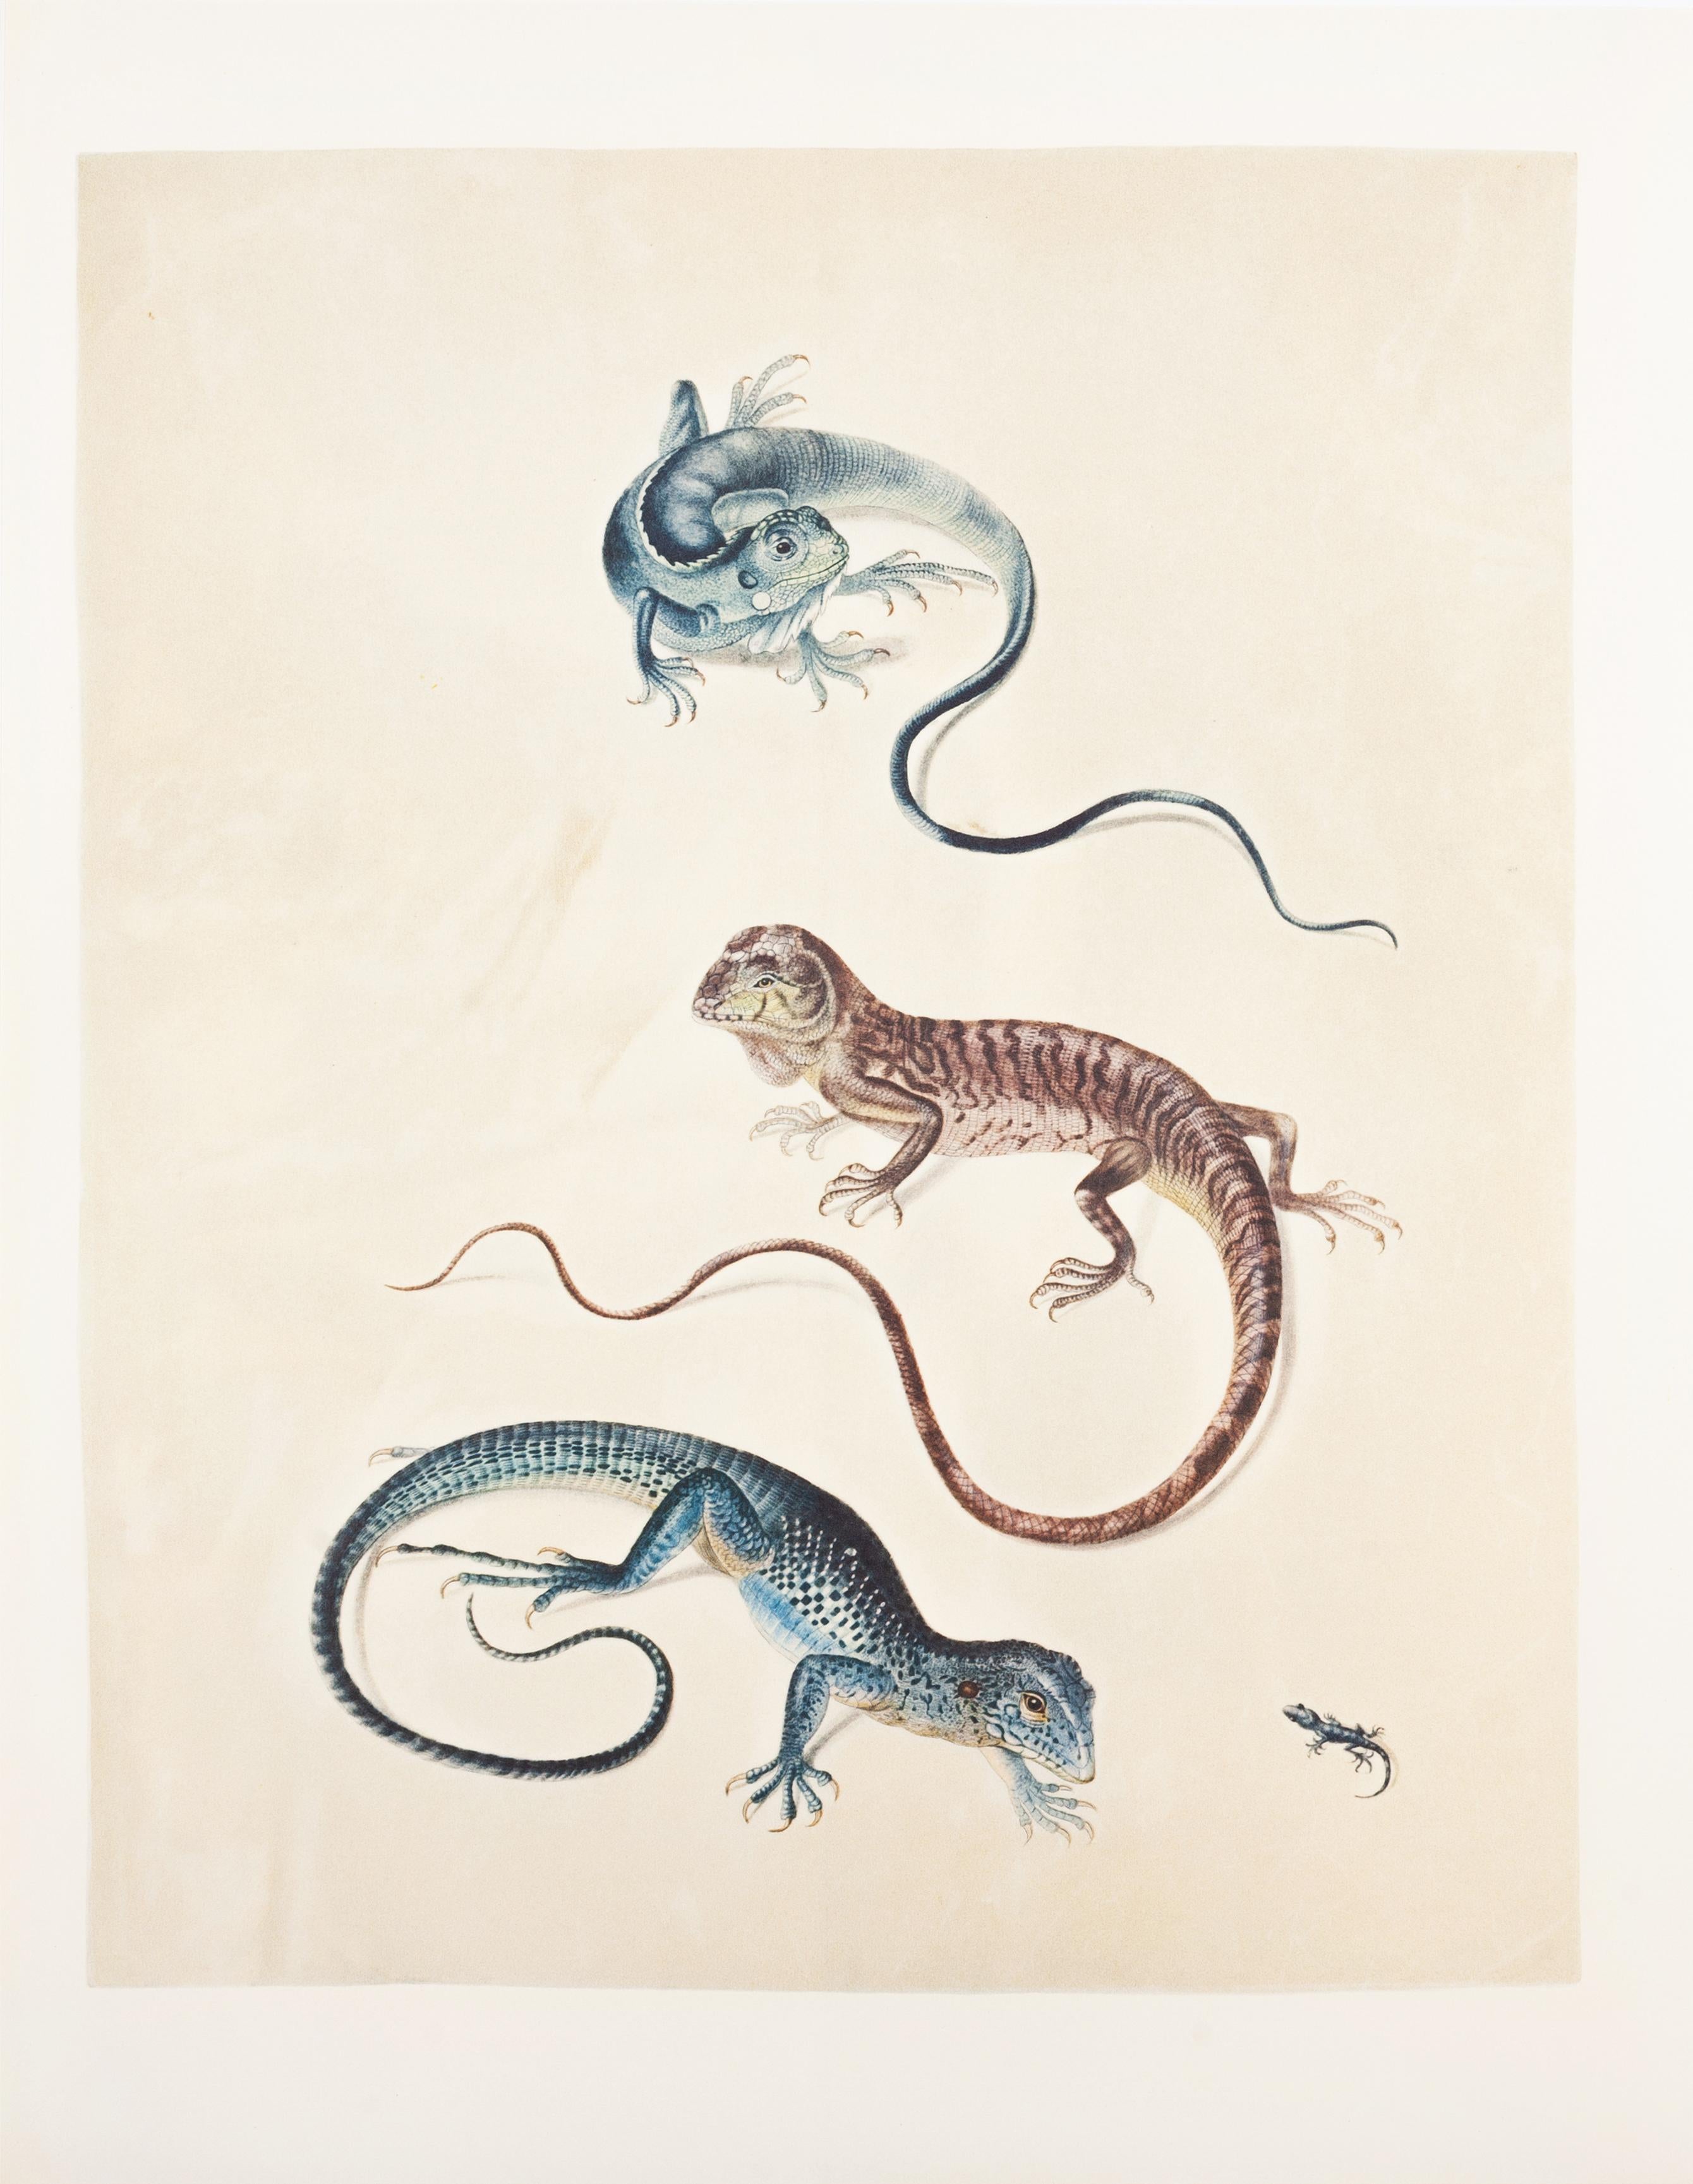 31. Keel-tail iguana, Holbrookia spec., Surinam ameiva, Gecko - Print by Maria Sybilla Merian